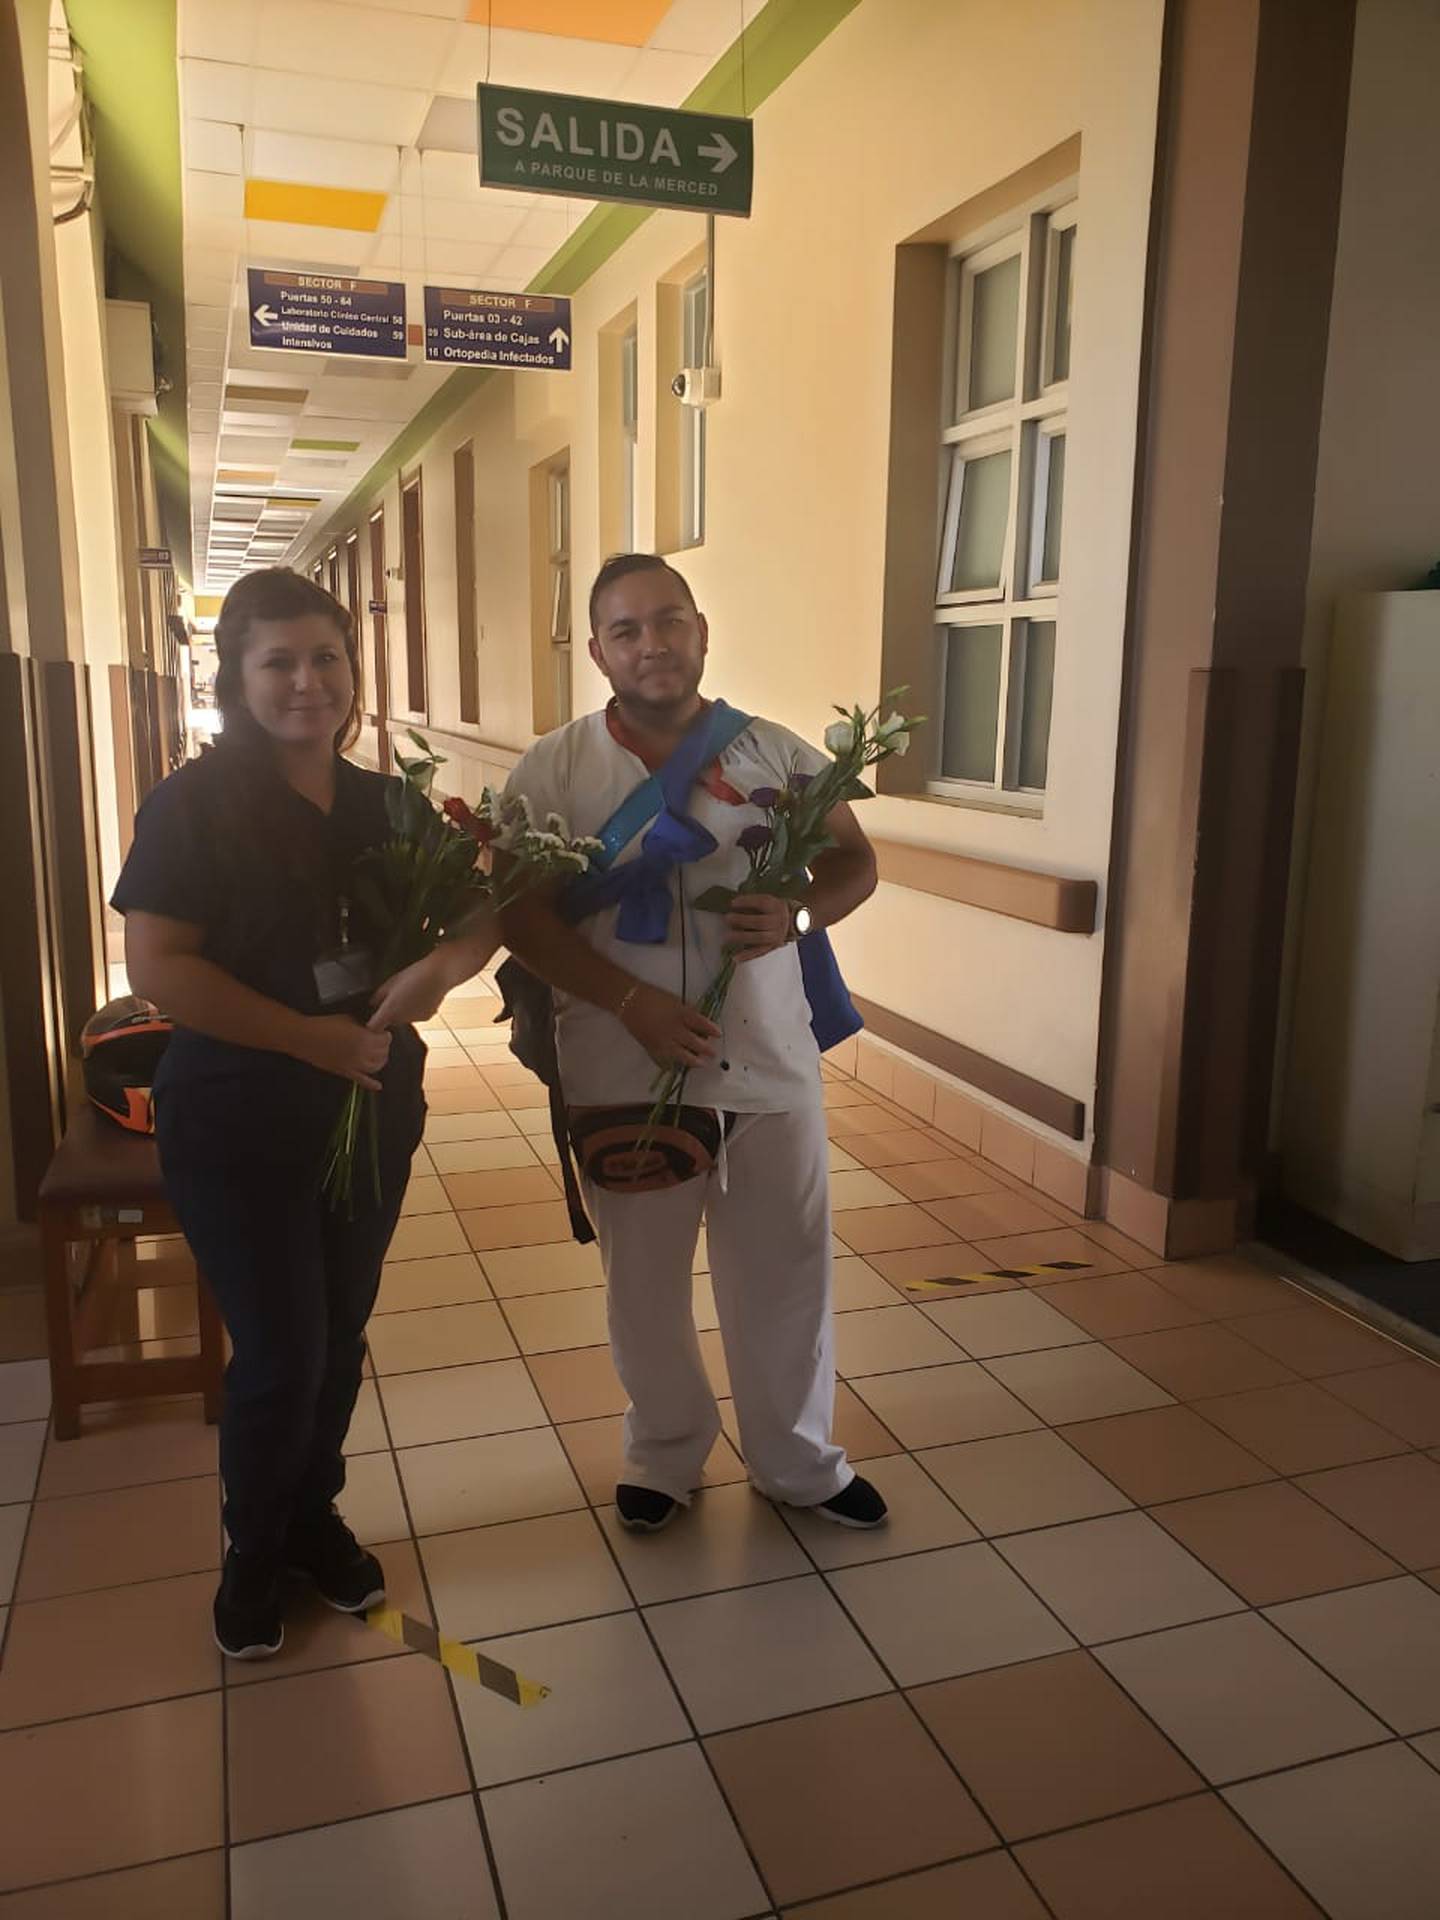 Fernando Alfaro, es un muchachillo de quinto año de colegio, bien lleno de amor, quien tomó la decisión de irse al Hospital San Juan de Dios y regalarle flores a los trabajadores de la Salud.